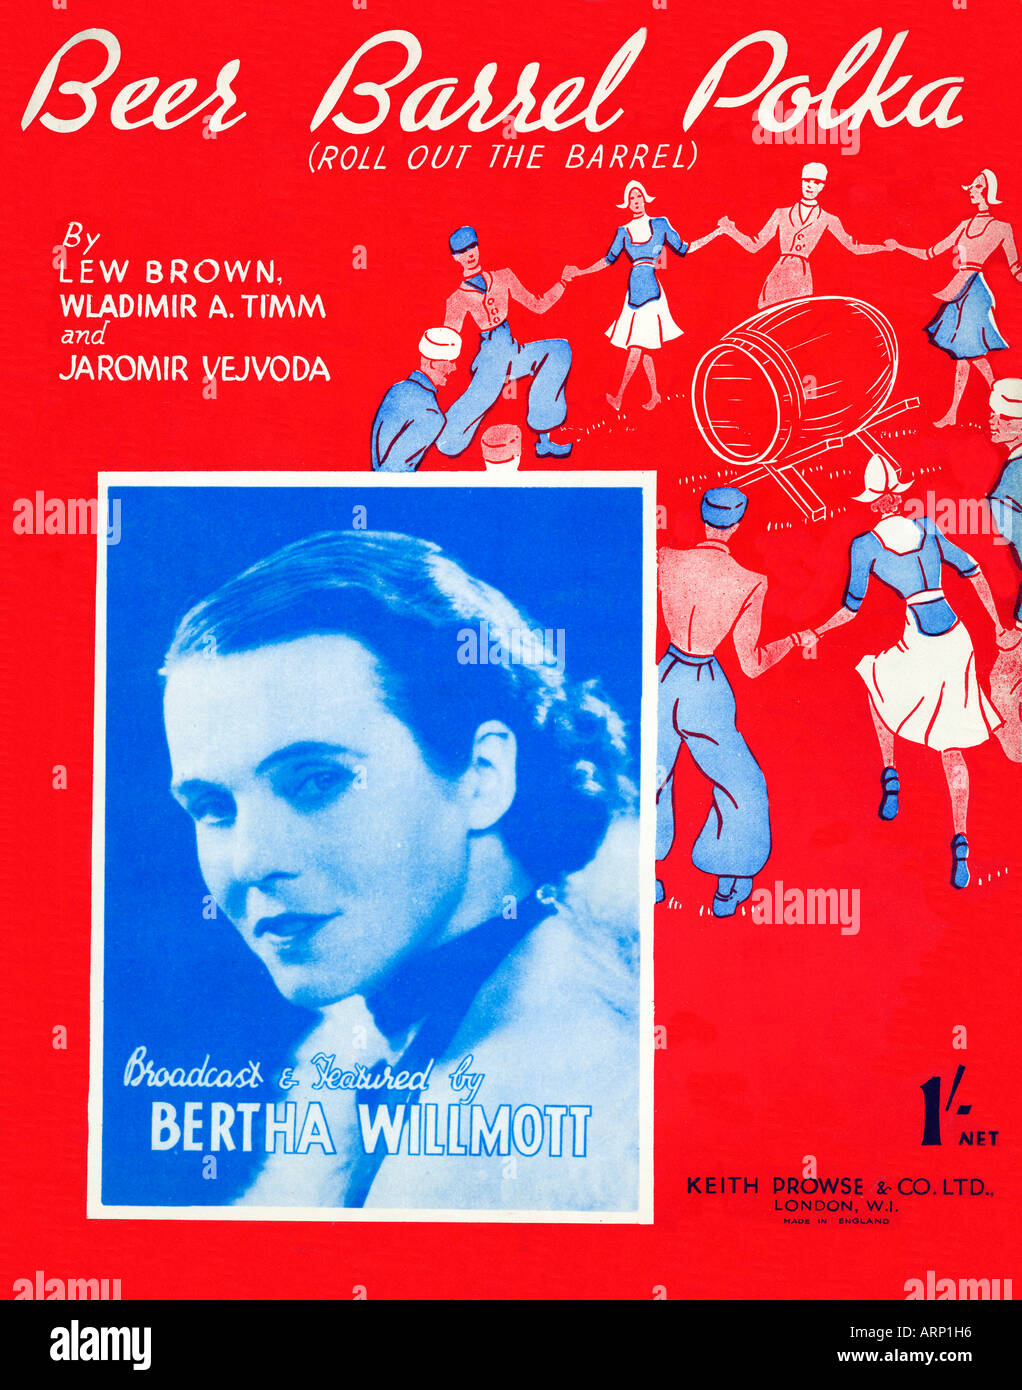 Beer Barrel Polka 1934 feuille de musique pour couvrir la célèbre chanson potable Tonneaux du chanté par Berta Willmott Banque D'Images